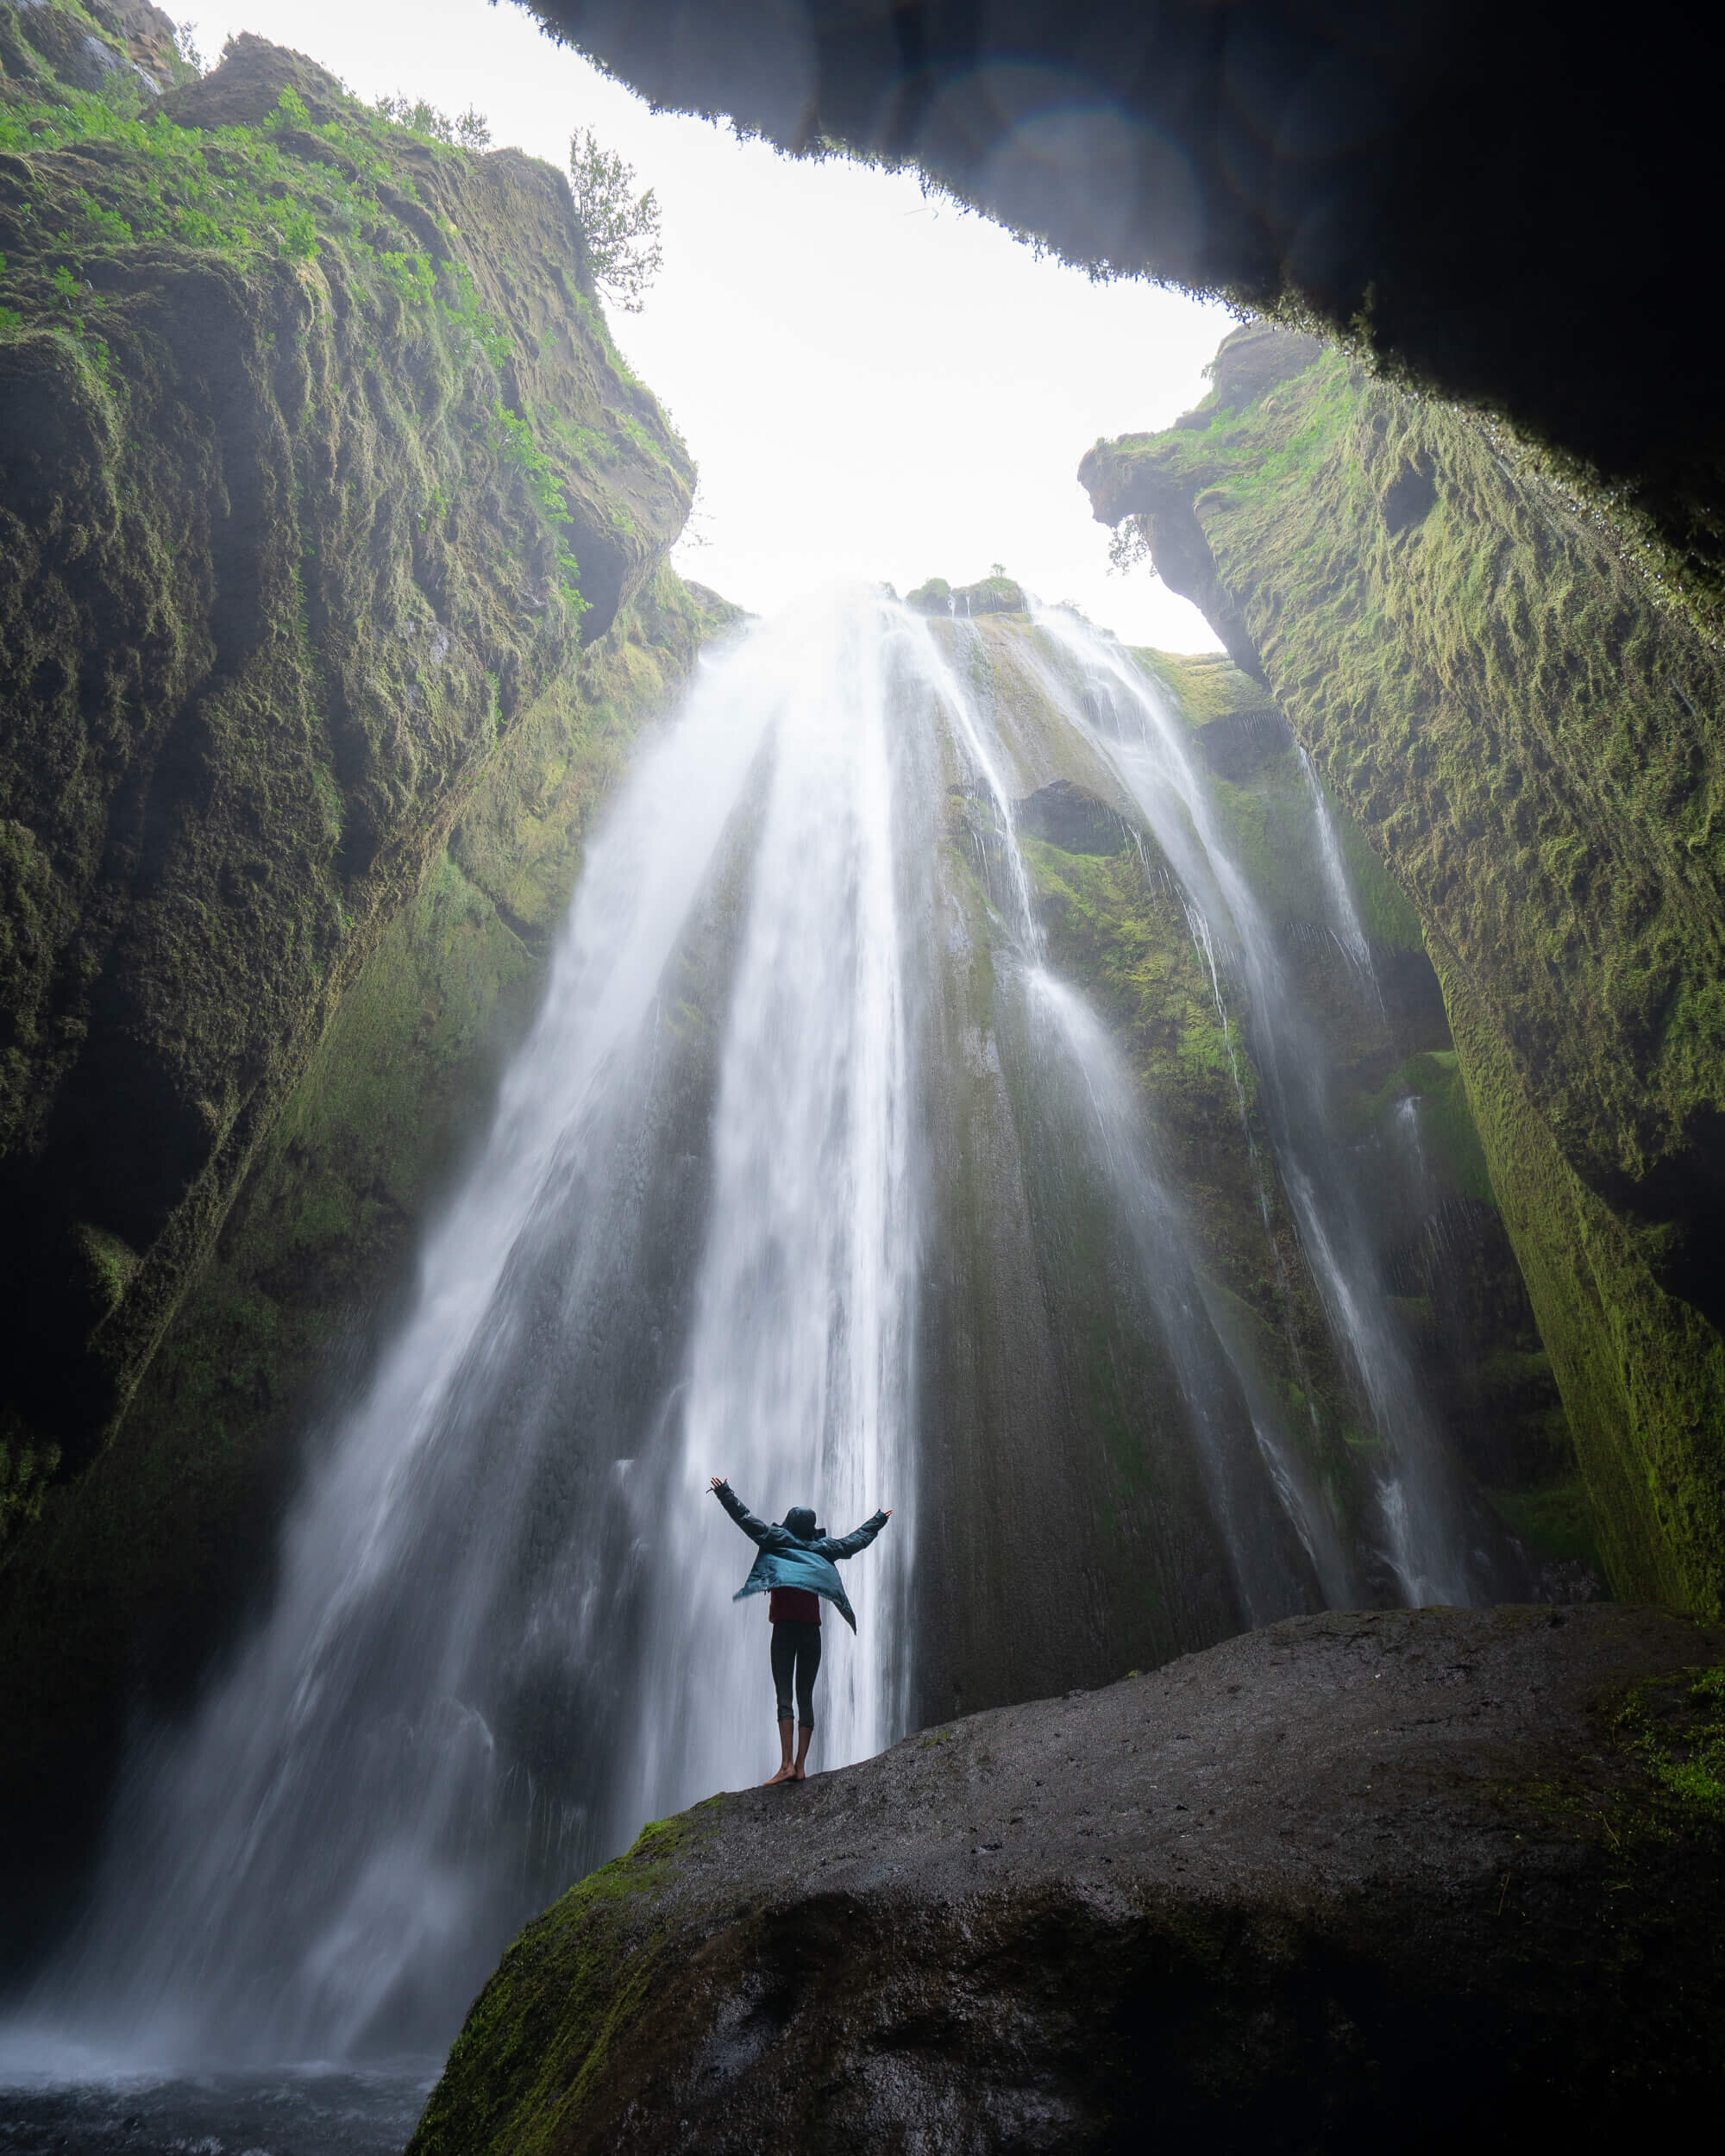 Gljúfrabúi waterfall in Iceland.